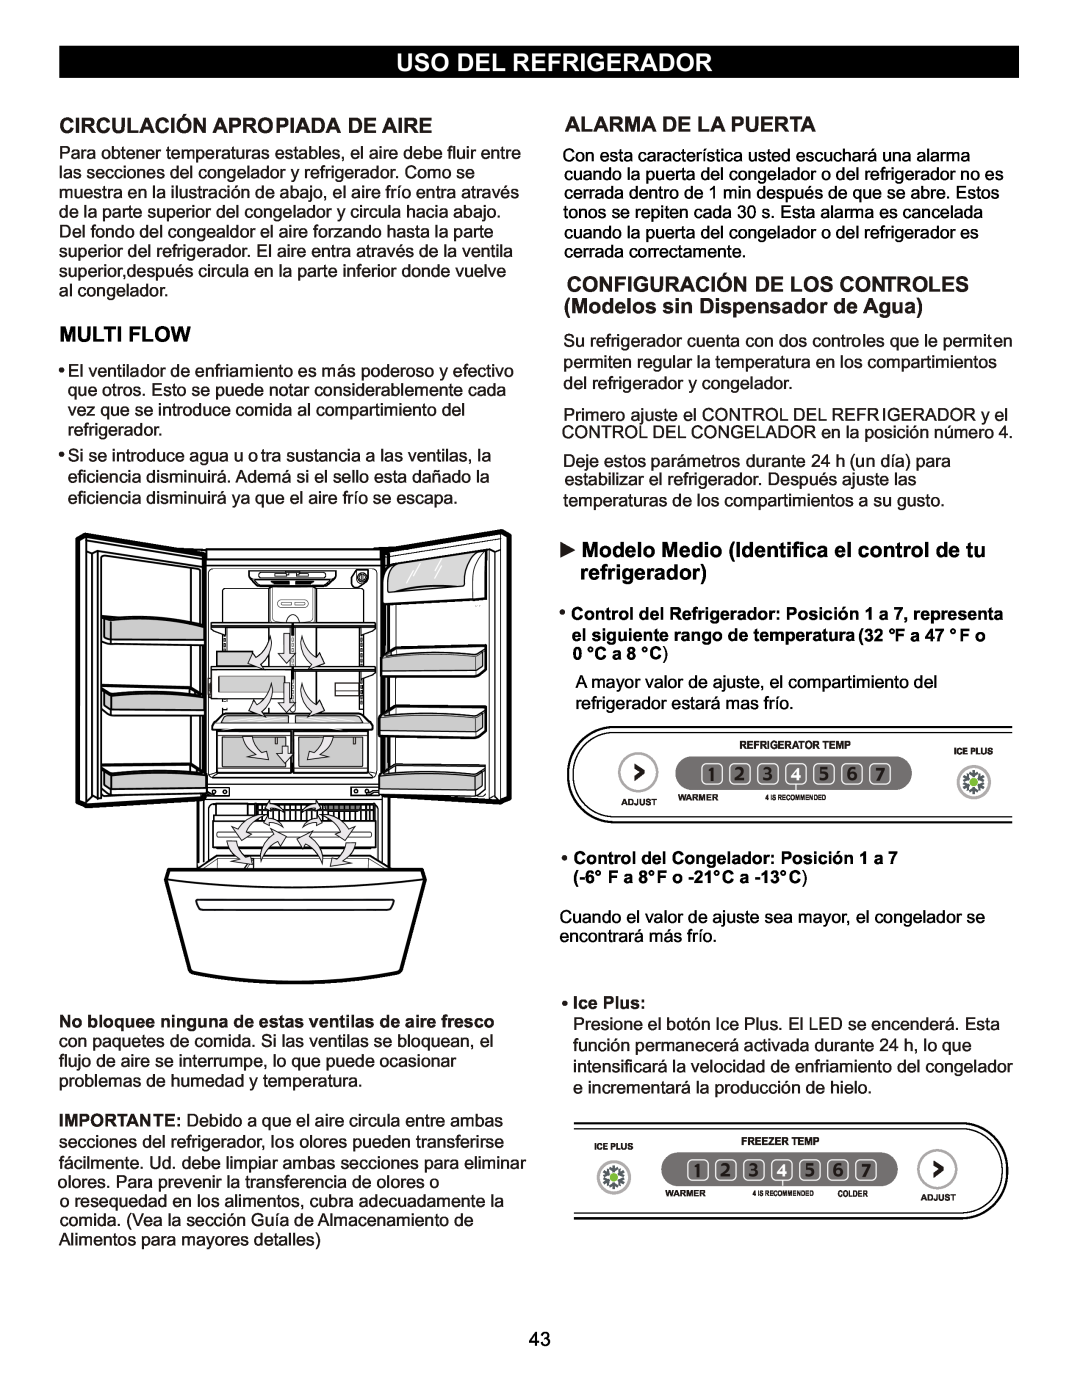 LG Electronics LFC23760 Uso Del Refrigerador, Circulación Apropiada De Aire, Multi Flow, Alarma De La Puerta, Ice Plus 